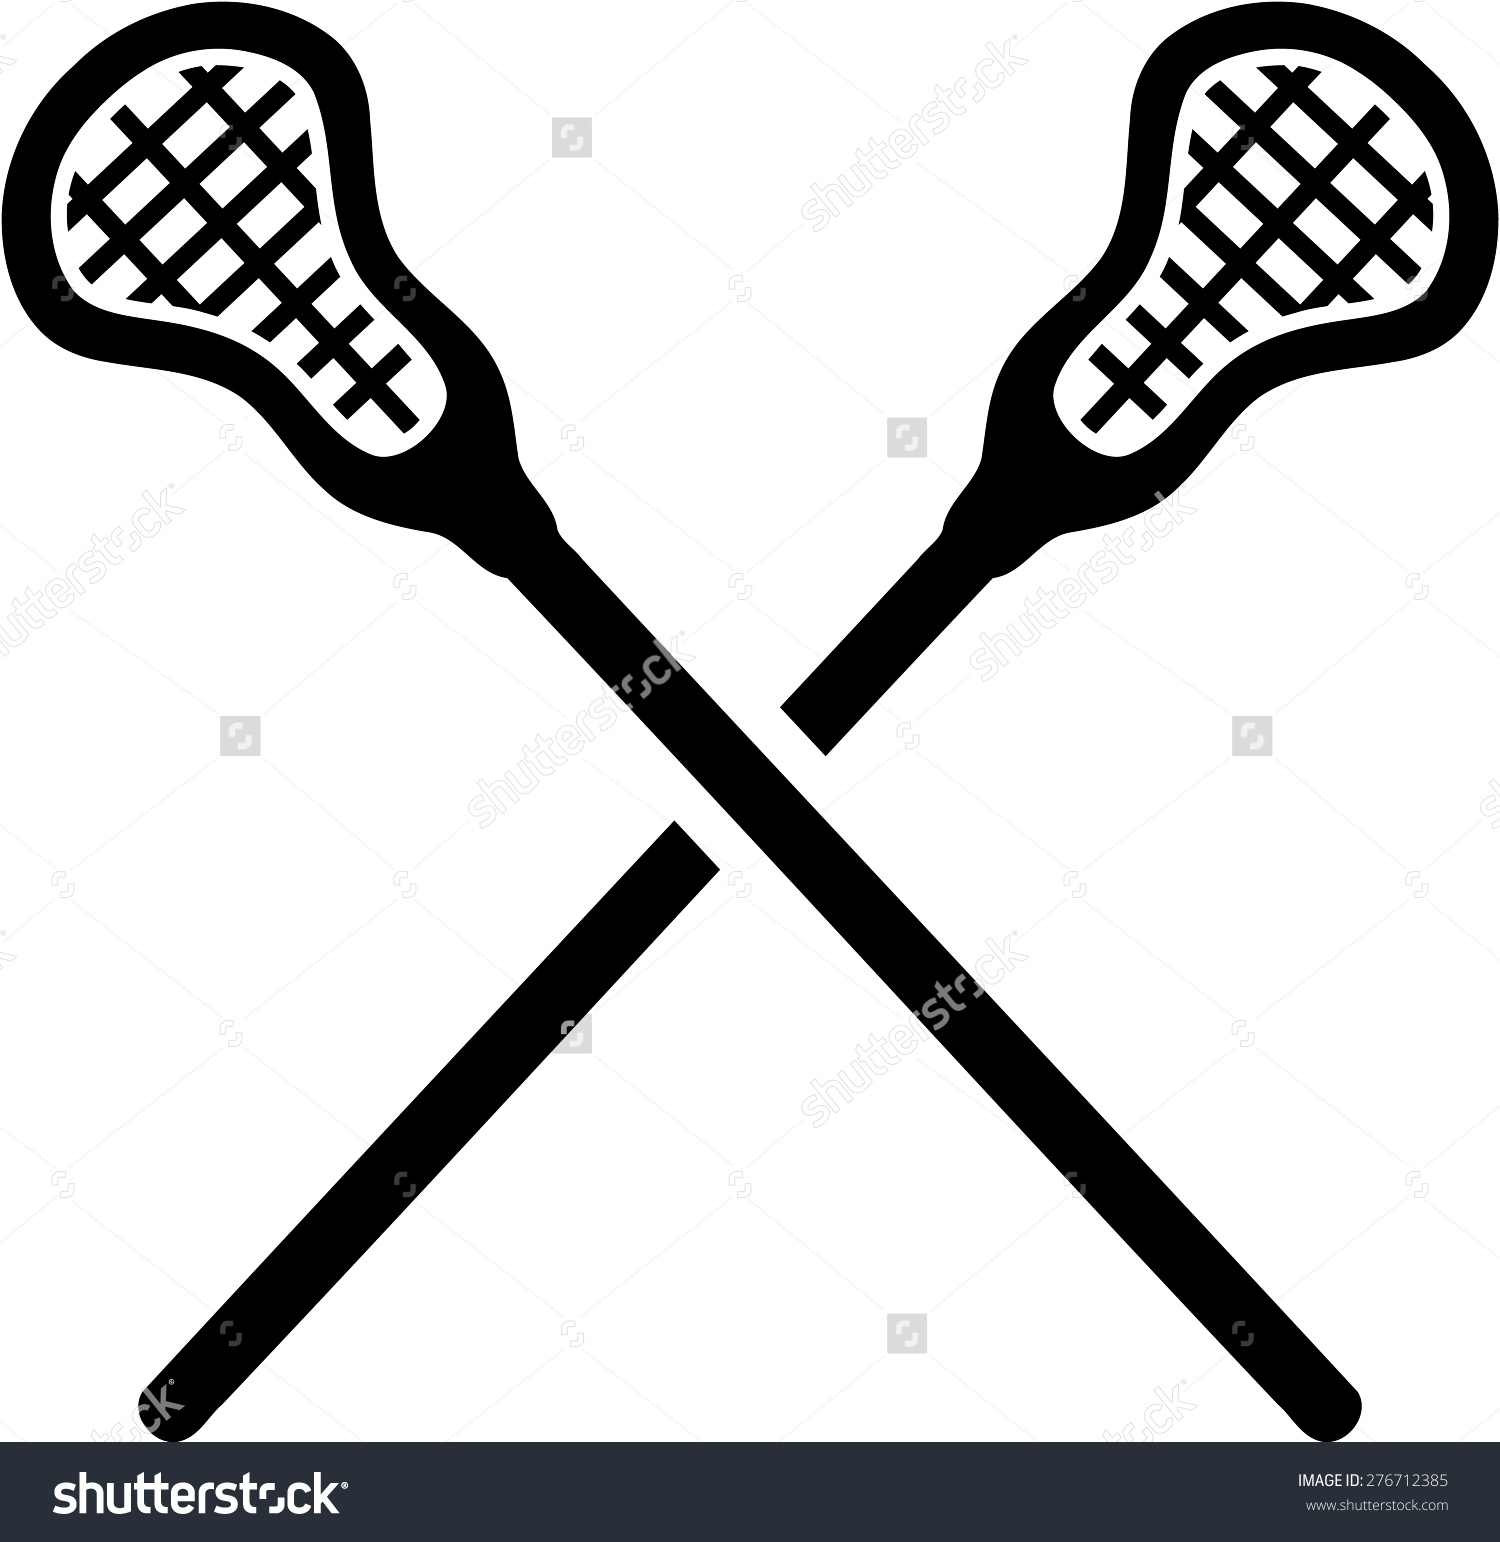 12 Lacrosse Stick Clip Art Fr